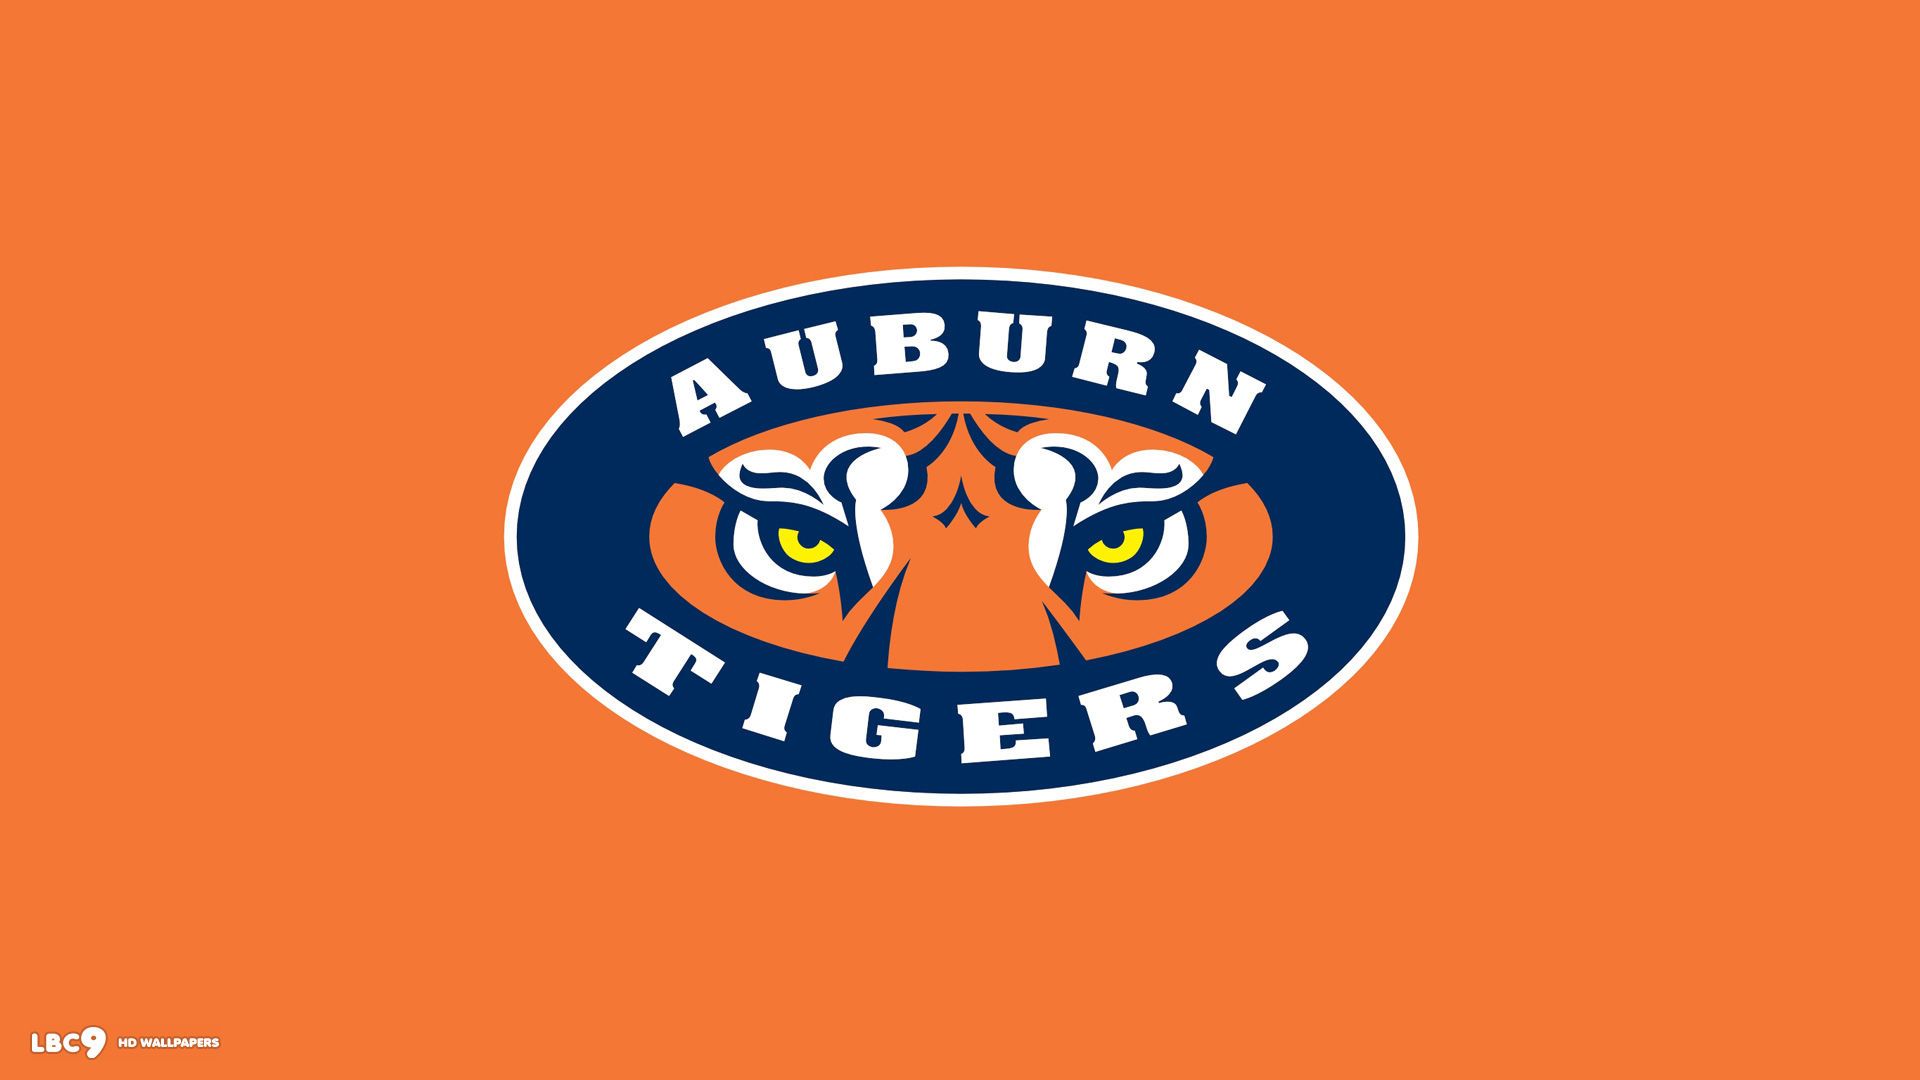 Auburn Tigers Wallpaper - HD Wallpapers Lovely